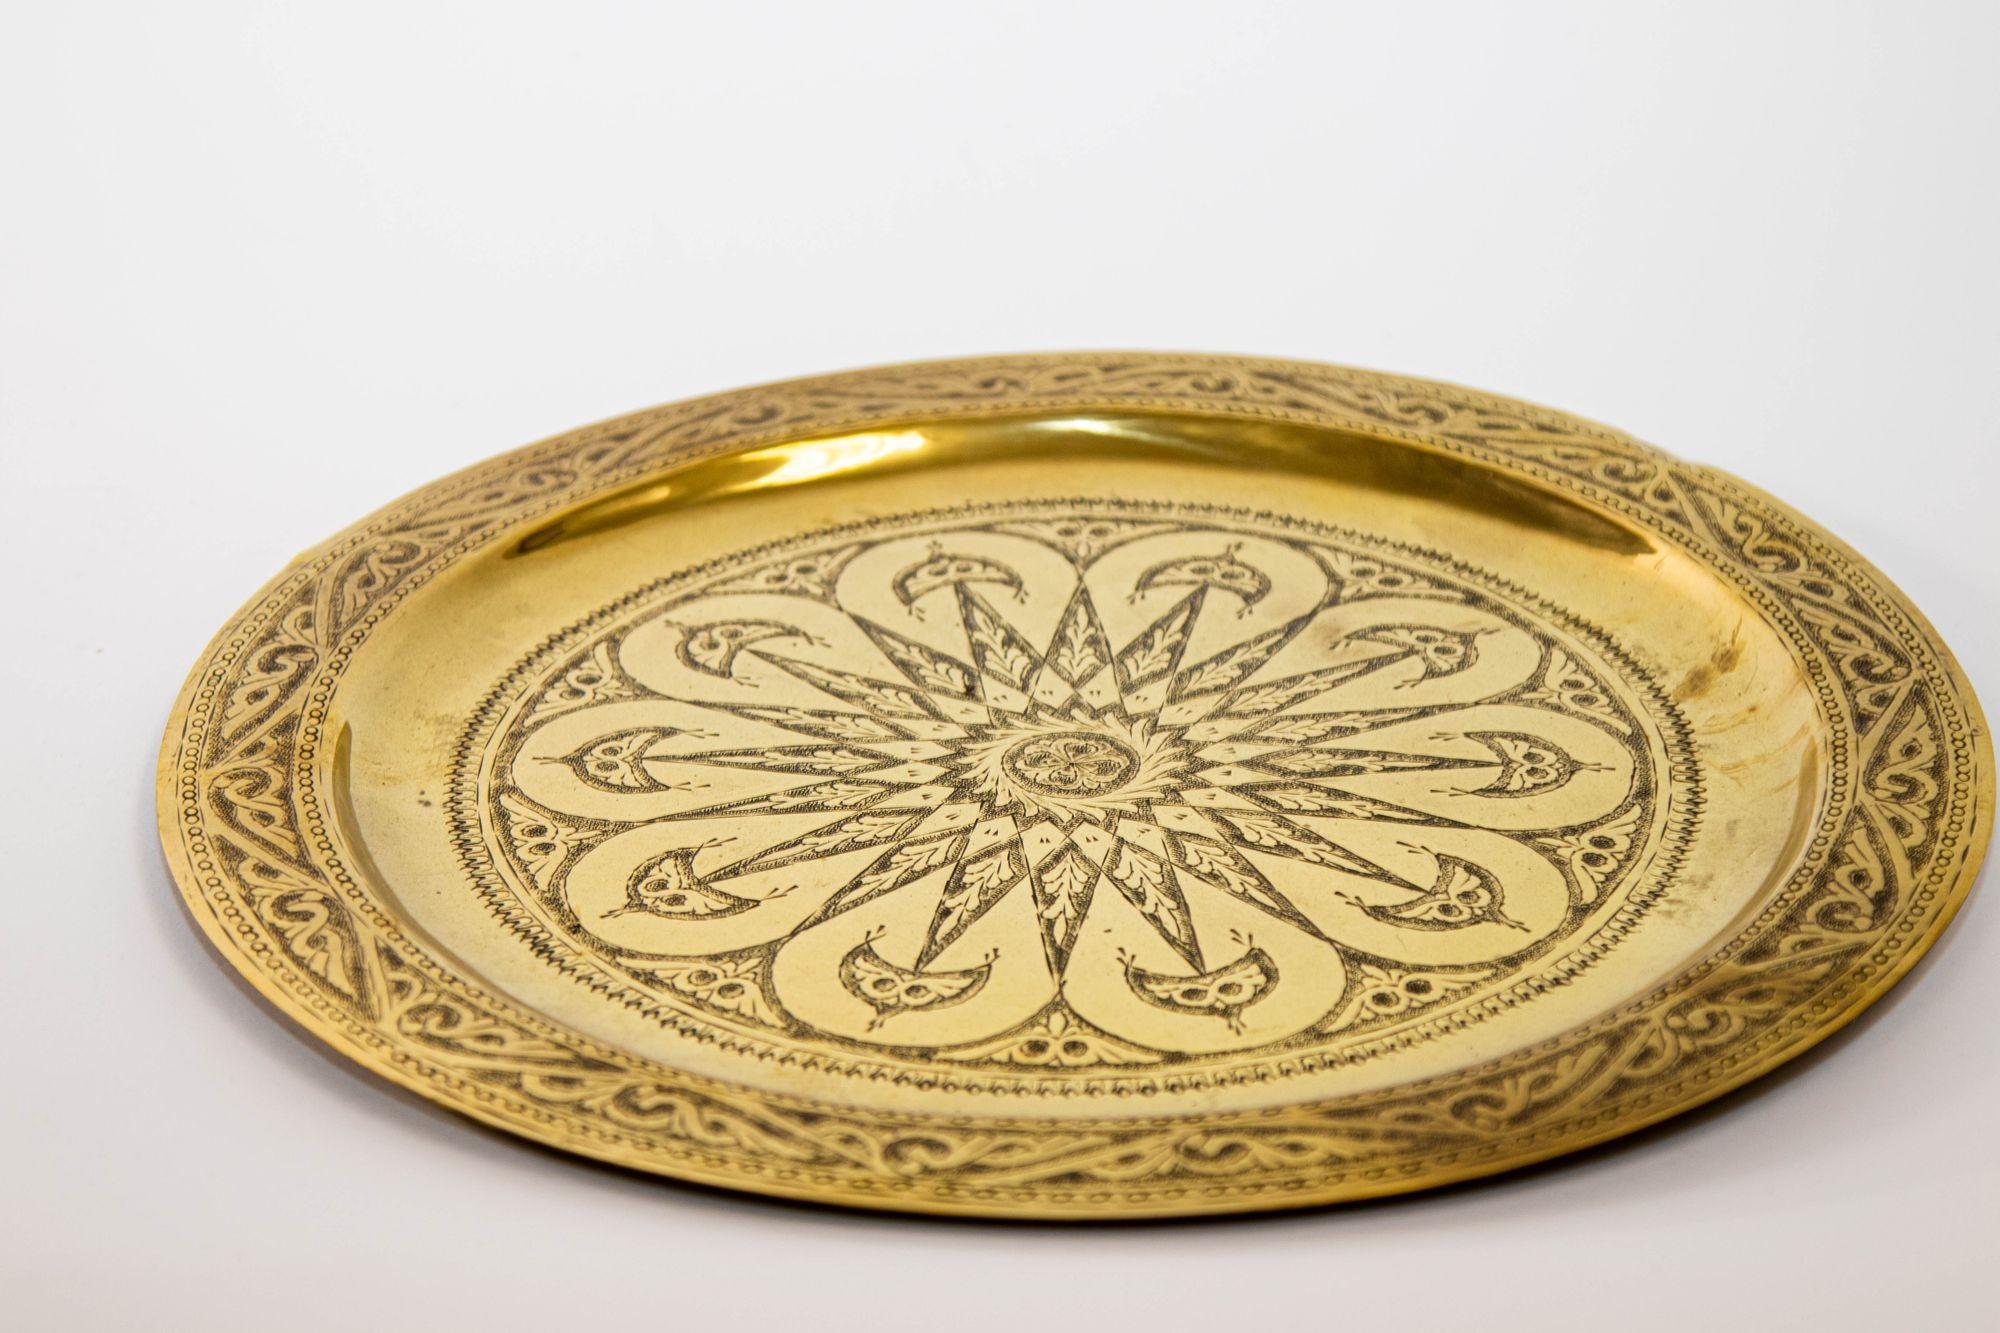 1940s Moroccan Brass Tray Polished Collectible Islamic Metal Work Platter.
Le plateau islamique en laiton poli est une pièce d'art remarquable qui incarne le riche héritage culturel et le savoir-faire artisanal de la métallurgie islamique. Ce